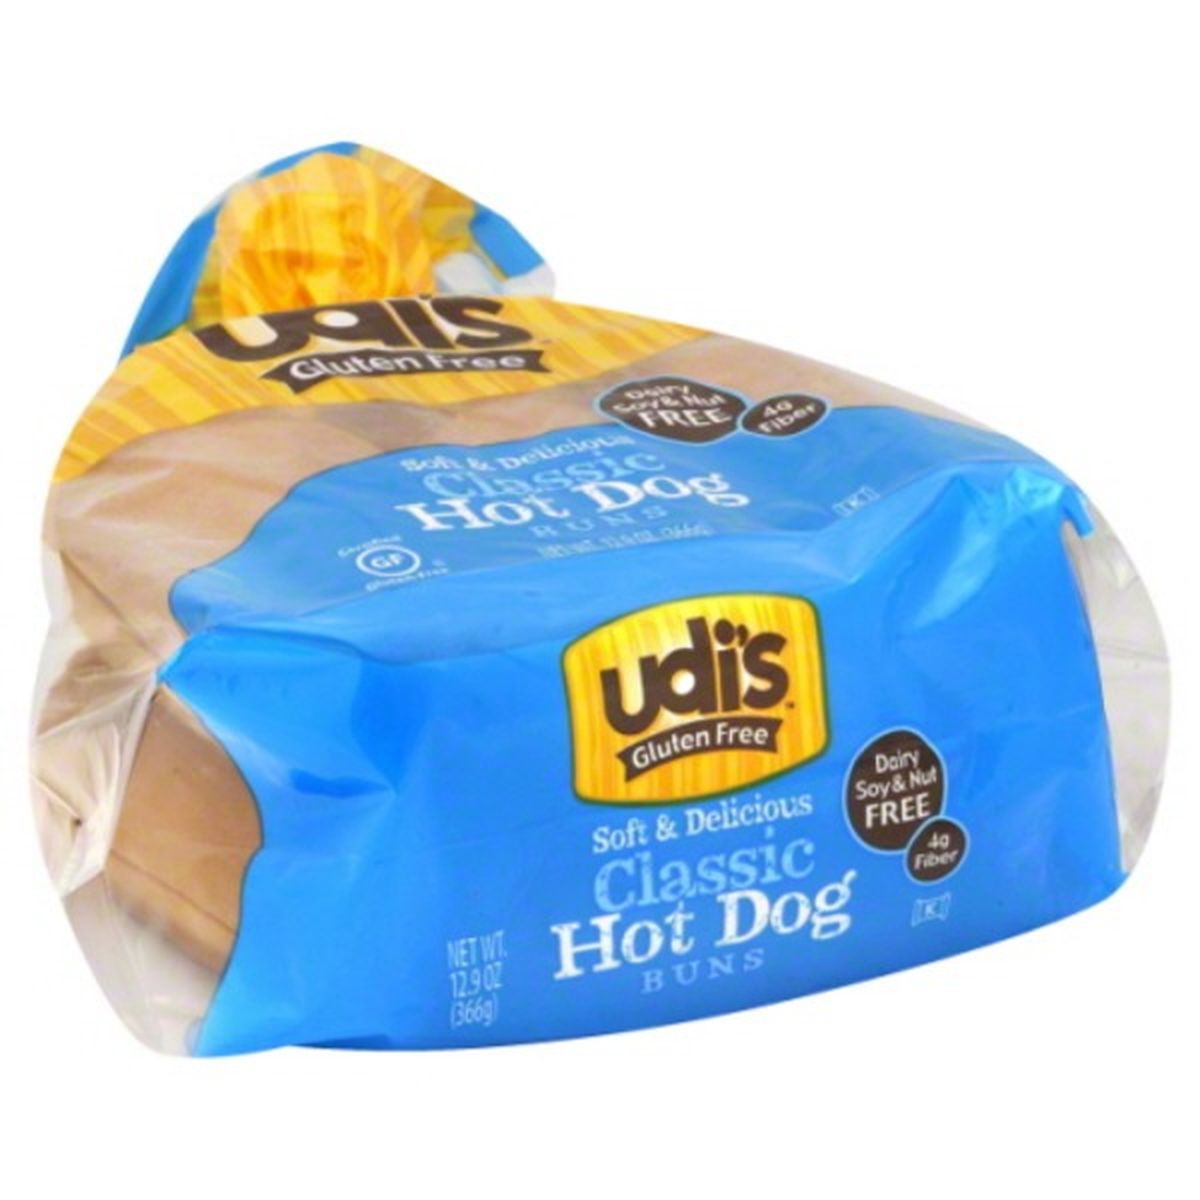 Calories in Udi's Gluten Free Hot Dog Buns, Classic